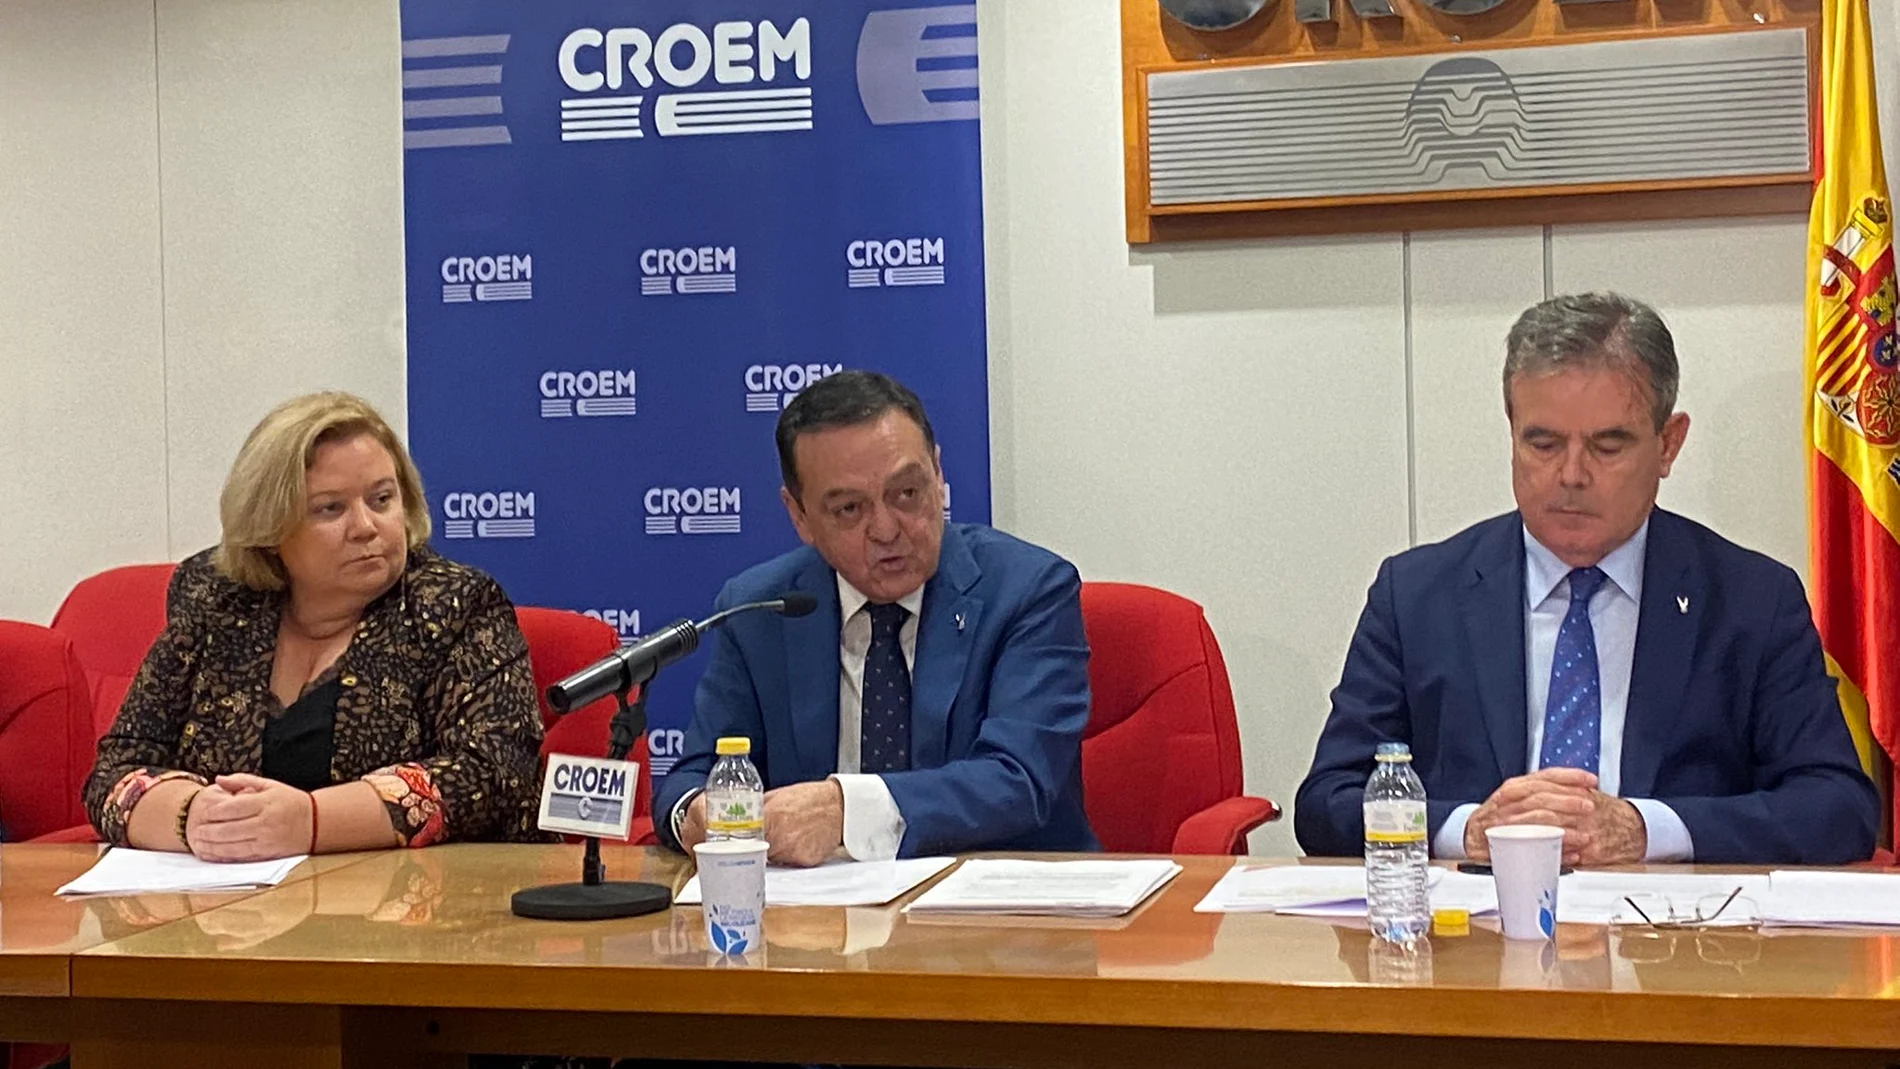 El presidente de la Croem, José María Albarracín, junto a Ana Correa y Juan Jódar